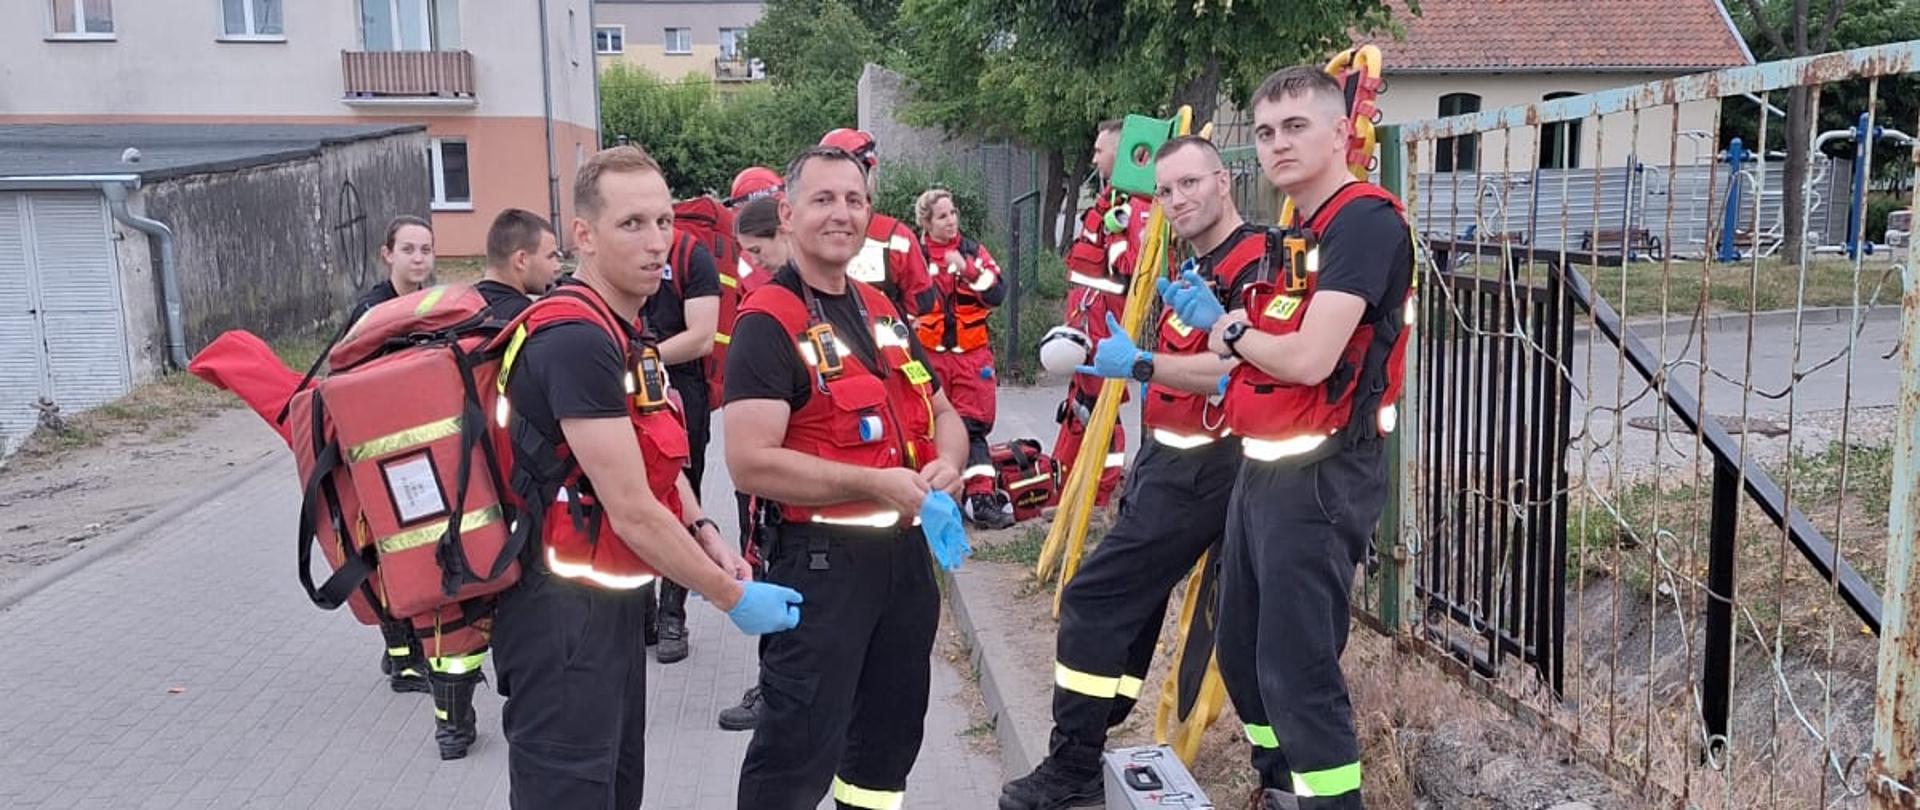 grupa strażaków w czerwonych kamizelkach z torbą medyczną i deską ratowniczą stoją przy płocie